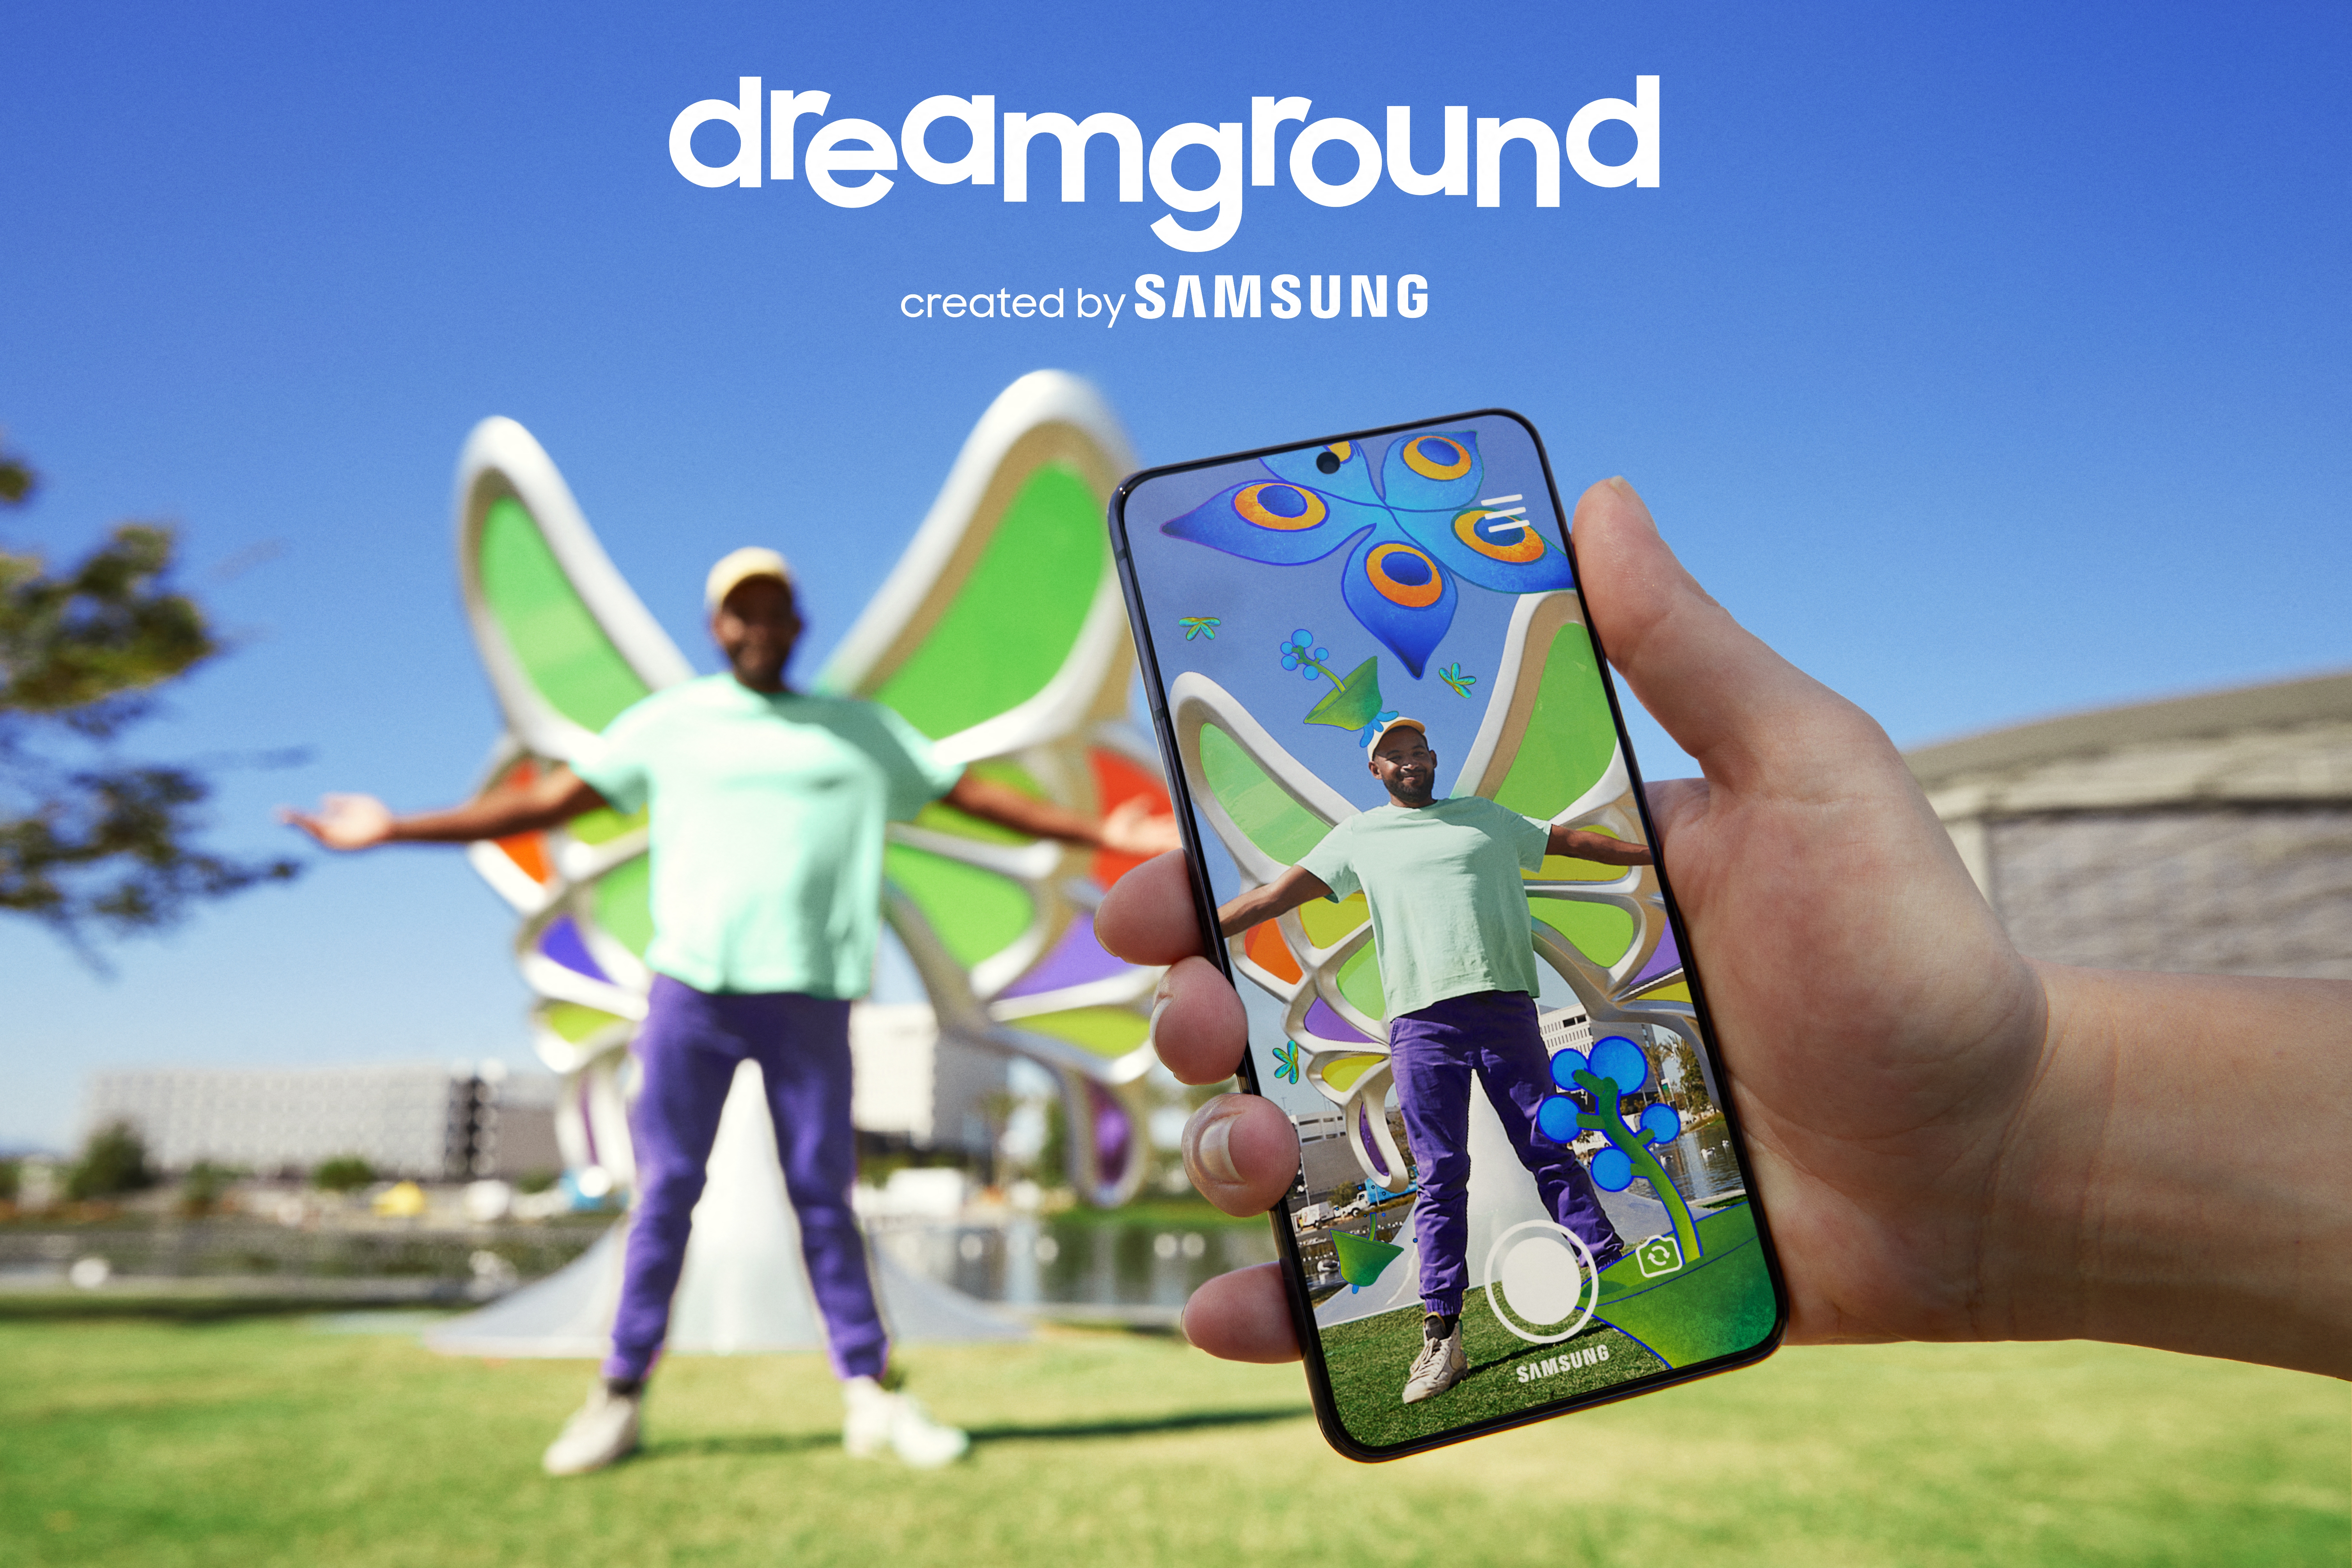 Samsung Dreamground to wielki plac zabaw stworzony w AR